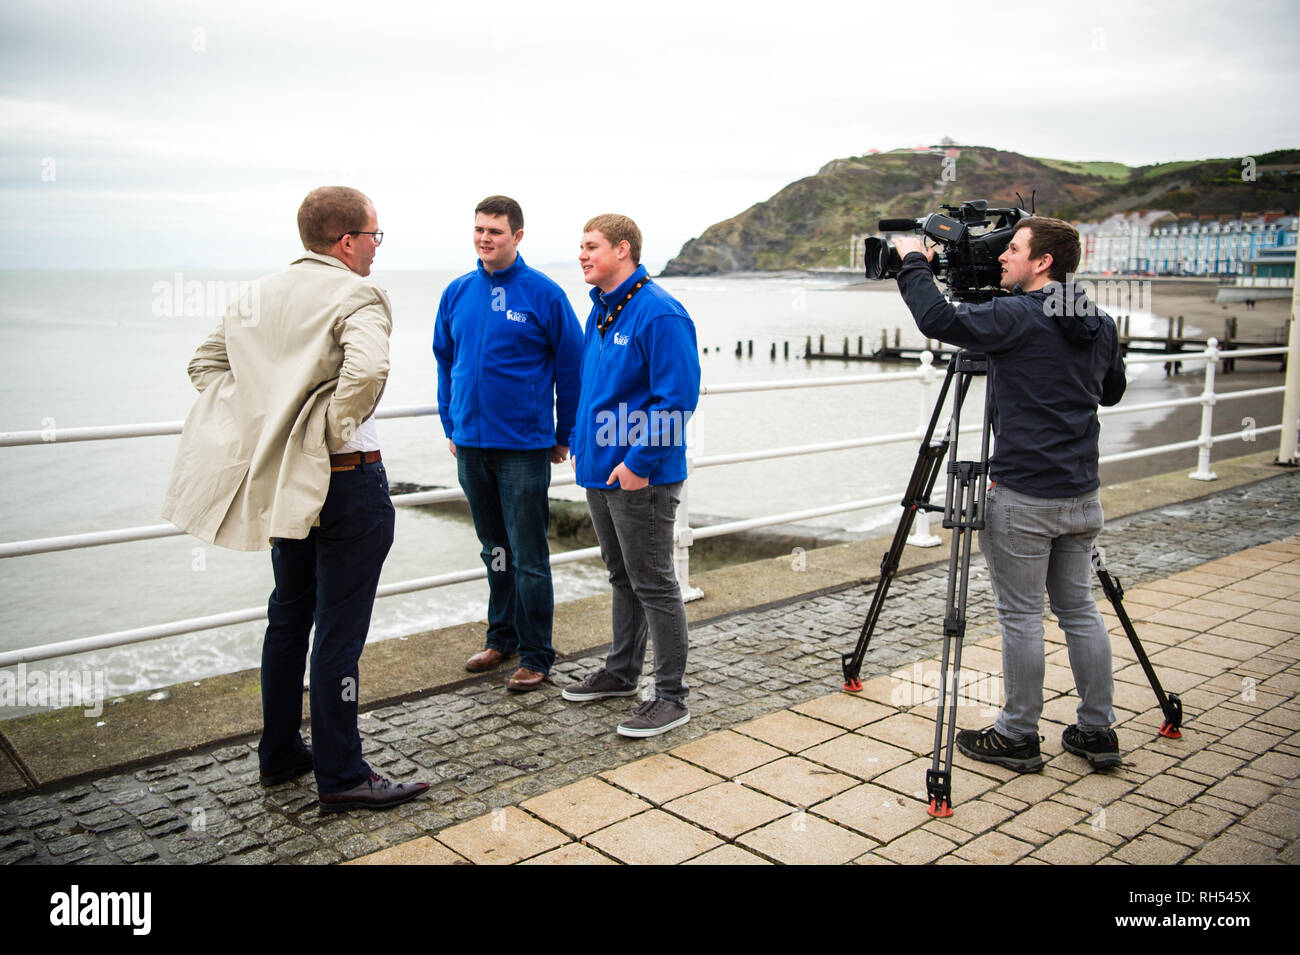 Los medios de difusión en el REINO UNIDO: un reportero de televisión de la BBC y el operador de cámara entrevistando a jóvenes en twoo Aberystwyth seafront, Gales, Reino Unido Foto de stock